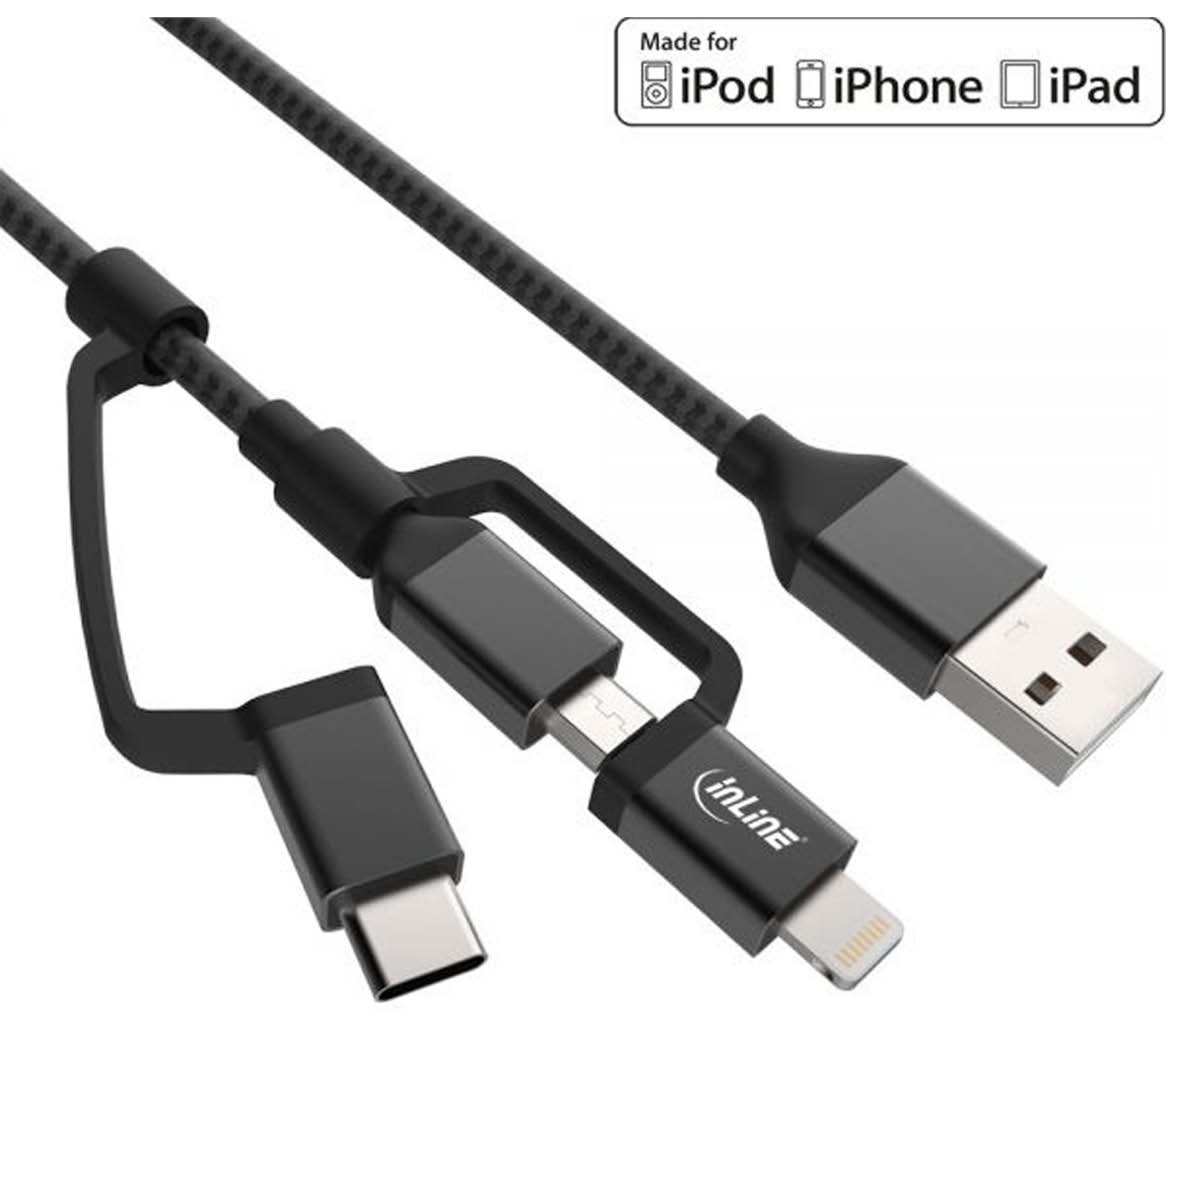 InLine 3in1 USB Kabel 1,5m Lightning Schwarz